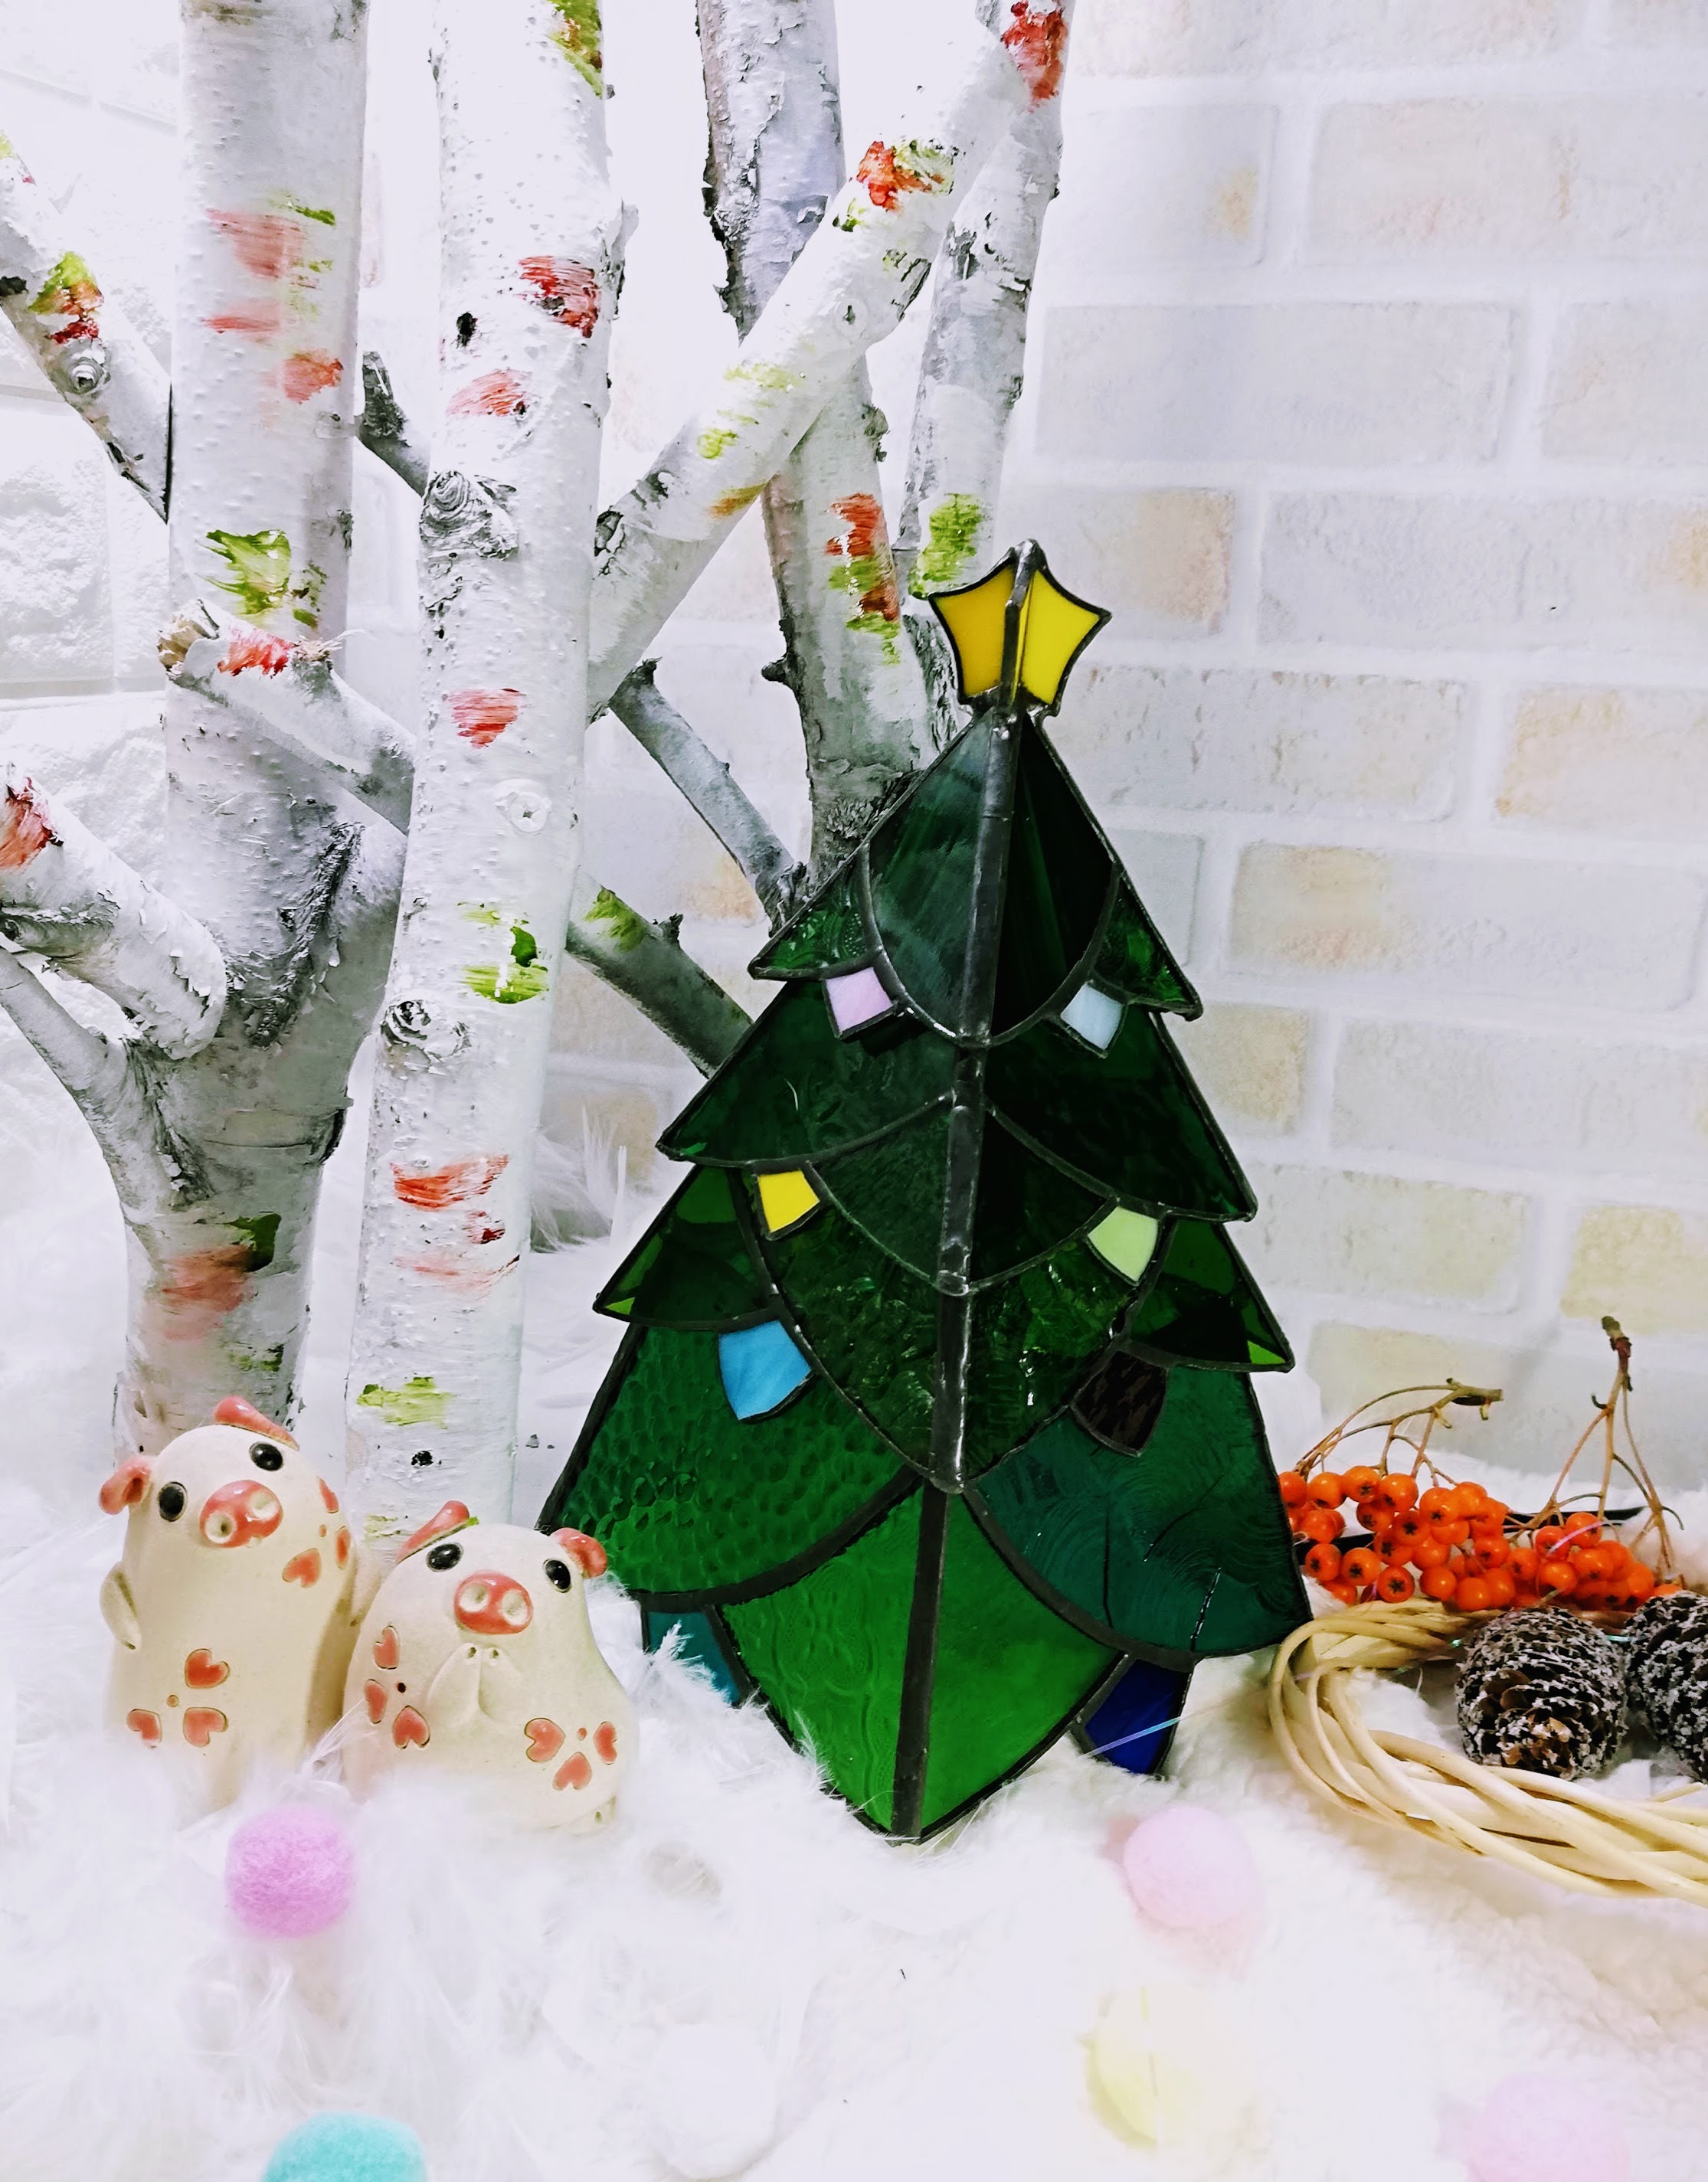 いつか家に飾りたい グリーン クリスマスツリー 針葉樹型 この時期に喜ばれるbig サプライズ Iichi ハンドメイド クラフト作品 手仕事品の通販